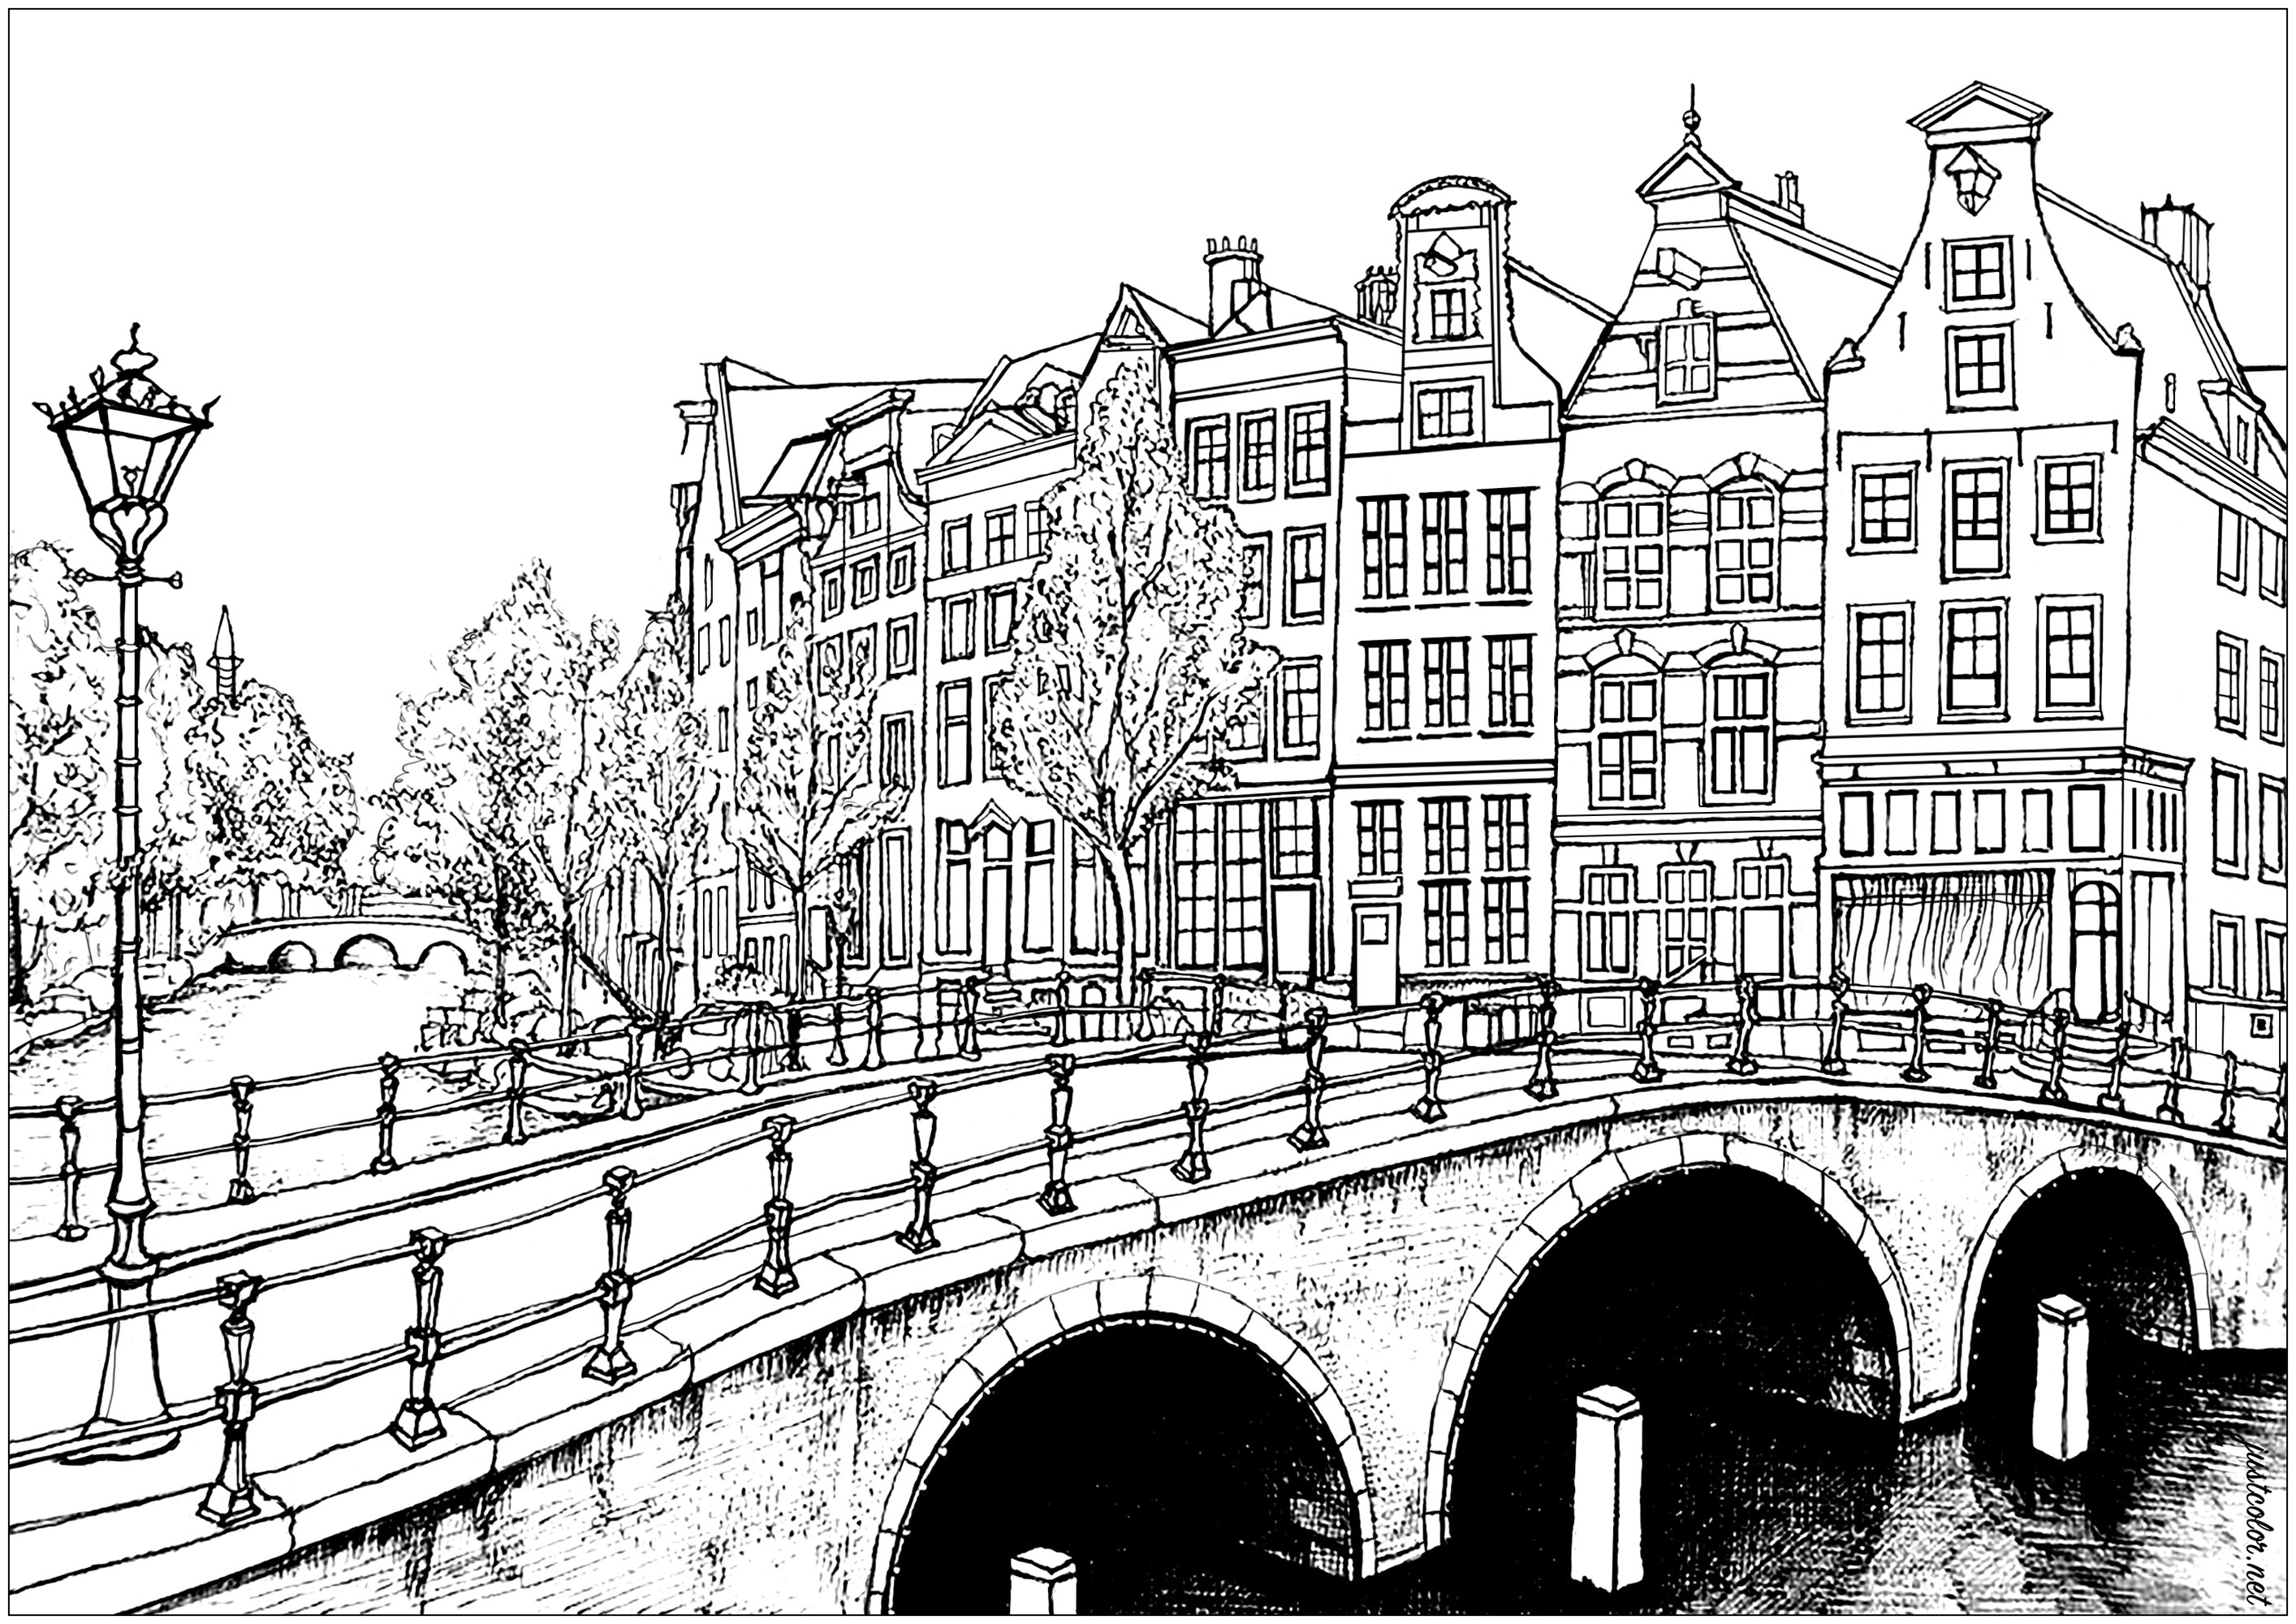 Maisons et ponts d'Amsterdam. Avec plus de 165 canaux, il est possible de parcourir 100 kilomètres sur l'eau à Amsterdam ! Encore plus impressionnant, il y a 1281 ponts dans la ville.La capitale hollandaise a de plus la plus forte concentration de musées au mètre carré de toutes les villes du monde. Les musées Van Gogh, Rijksmuseum et Stedelijk sont parmi les plus célèbres que vous puissiez visiter dans cette ville incroyable, Artiste : Olivier